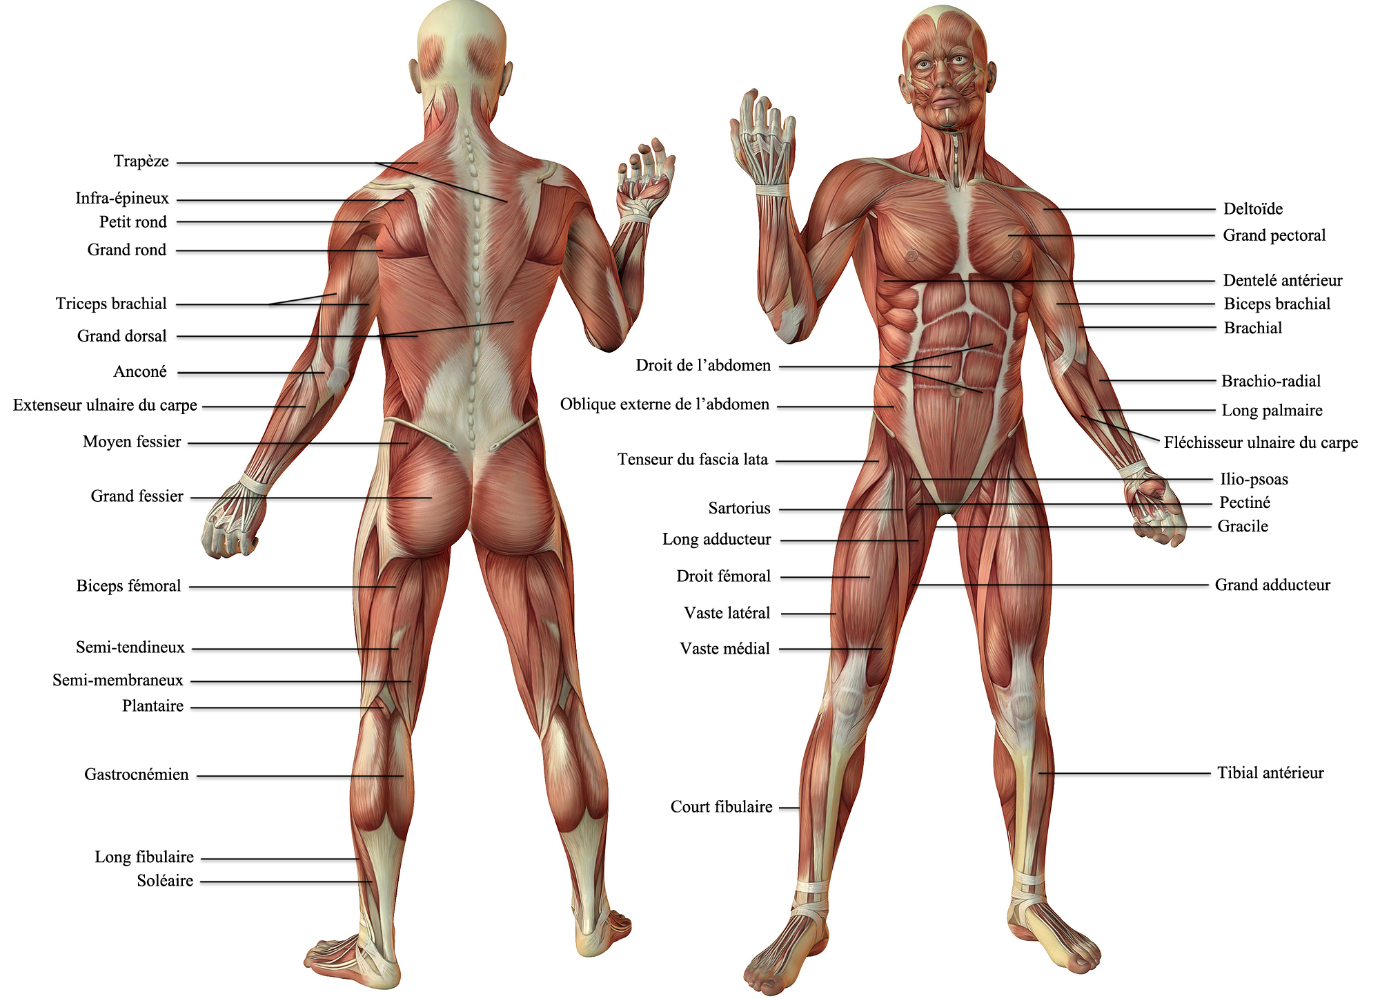 tous les muscles du corps humain